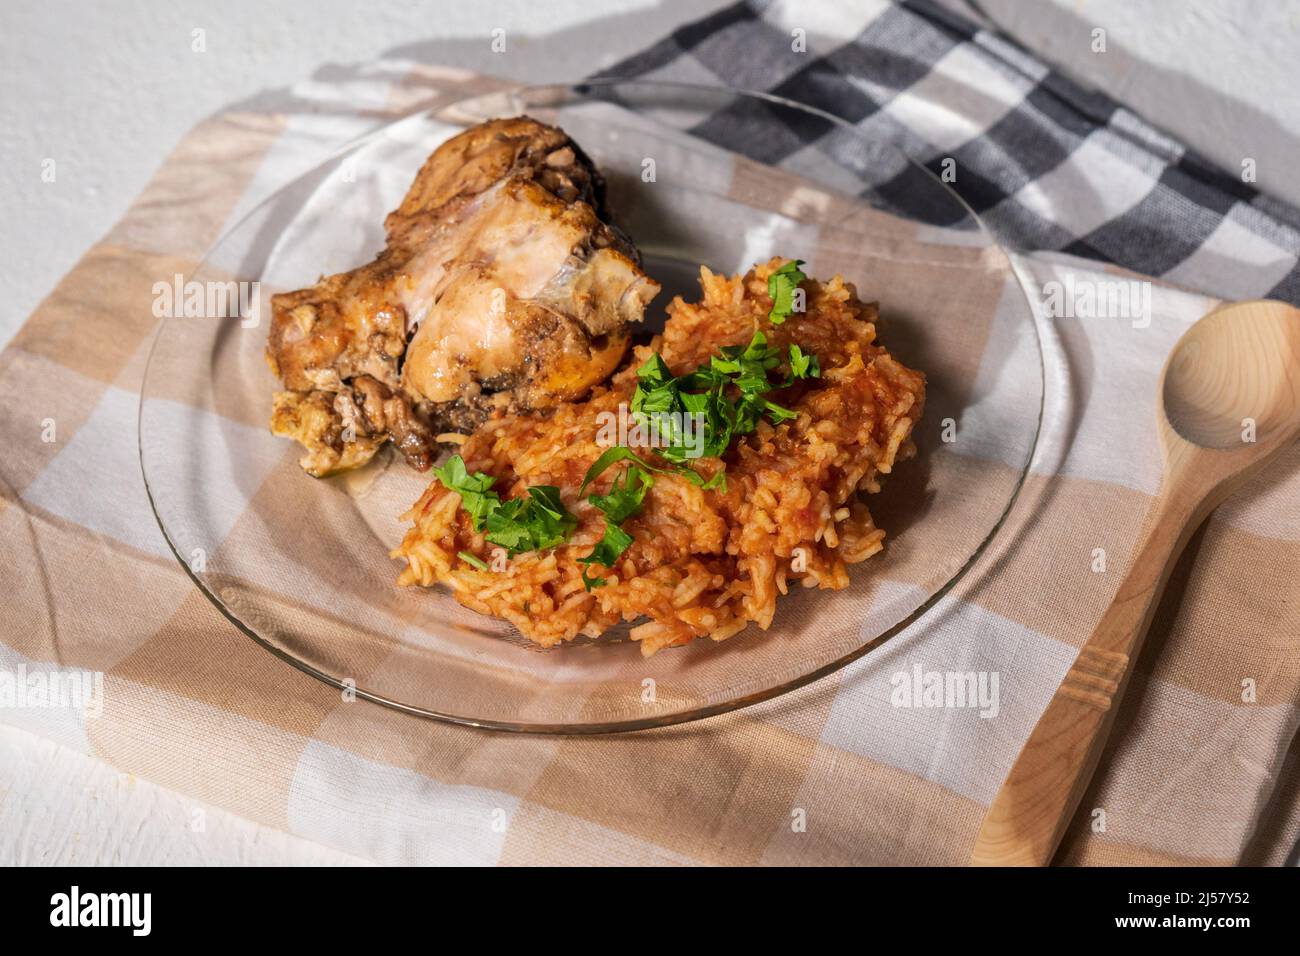 Cibo nigeriano: Jollof riso con pollo fritto in primo piano su un piatto. Foto Stock